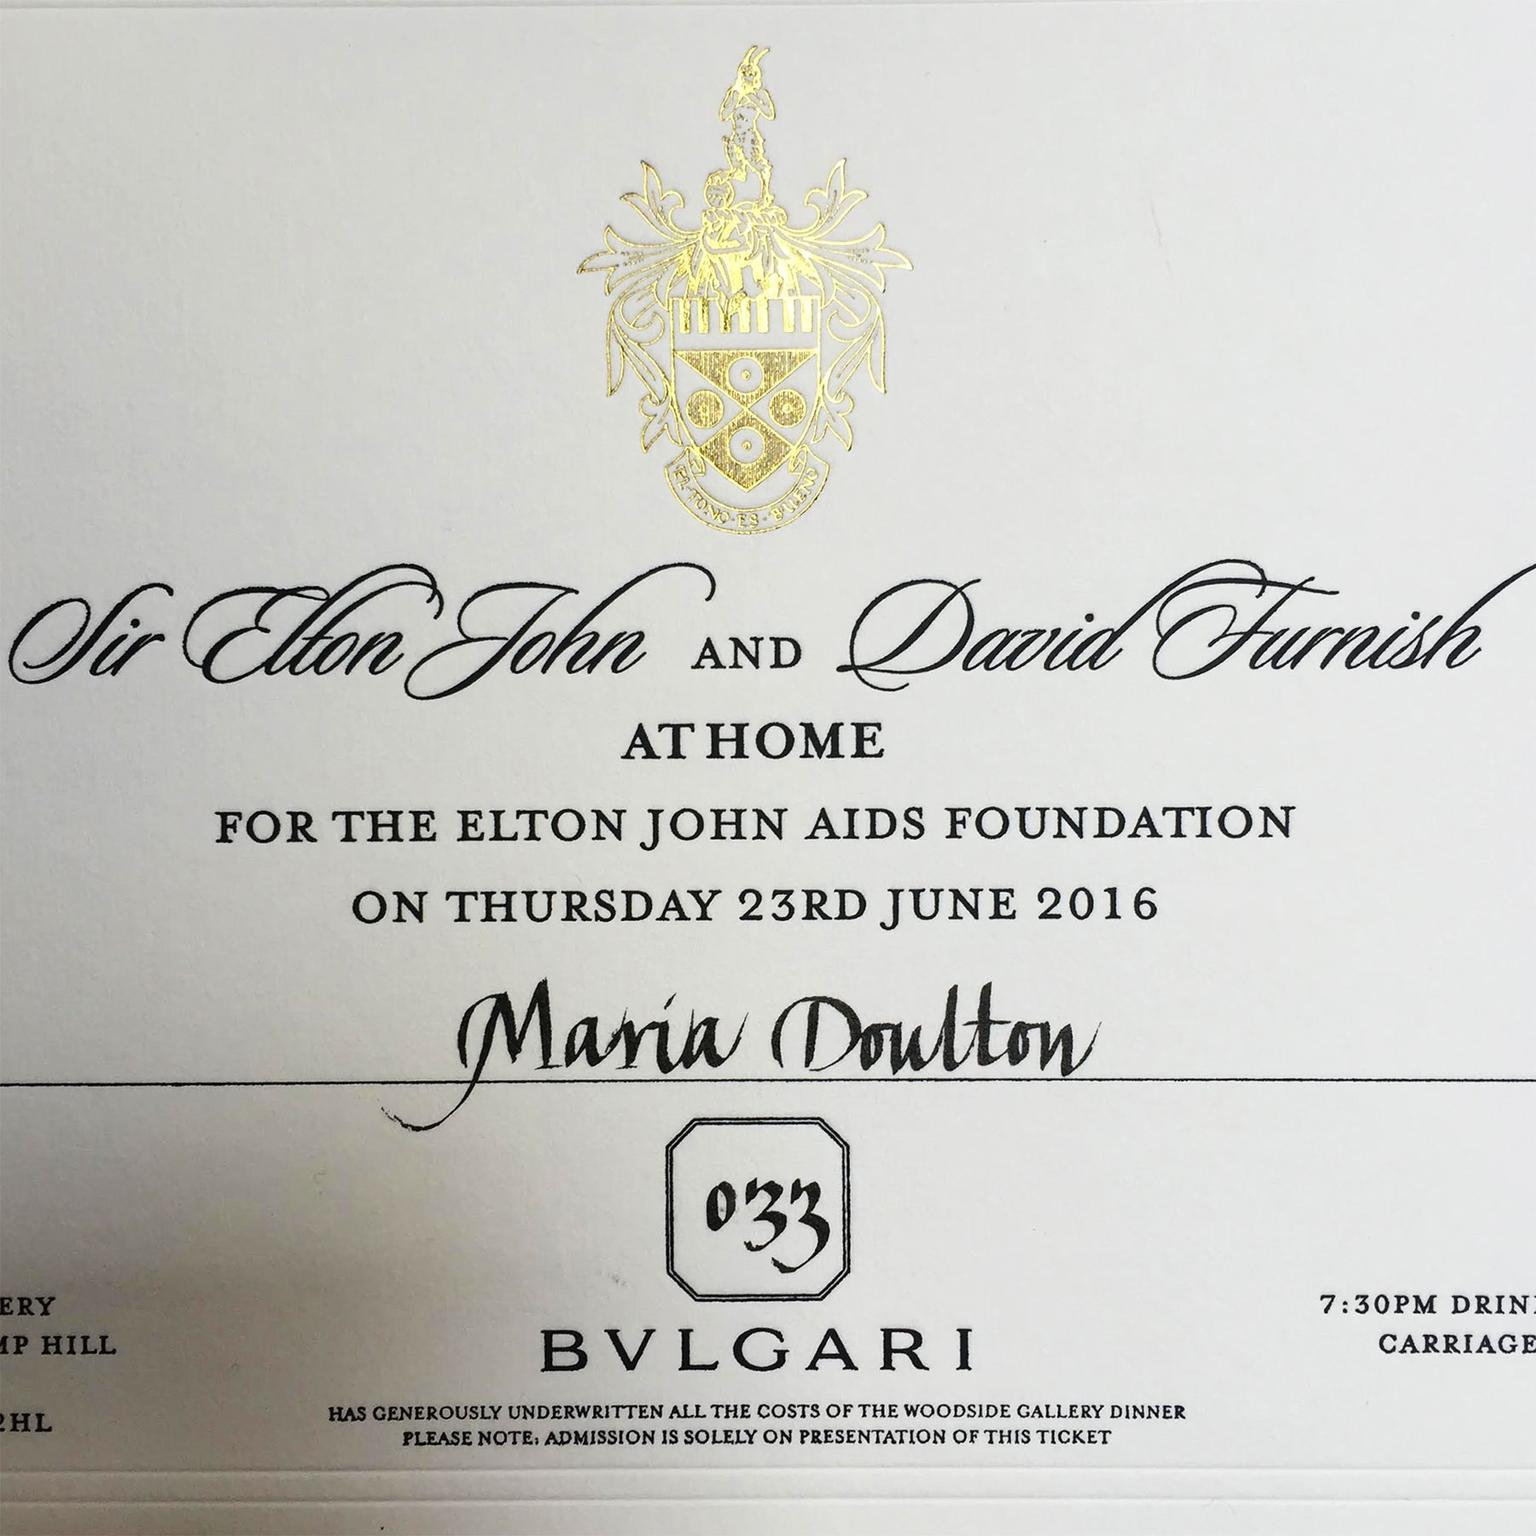 Maria Doulton's invite to the Elton John AIDS Foundation 